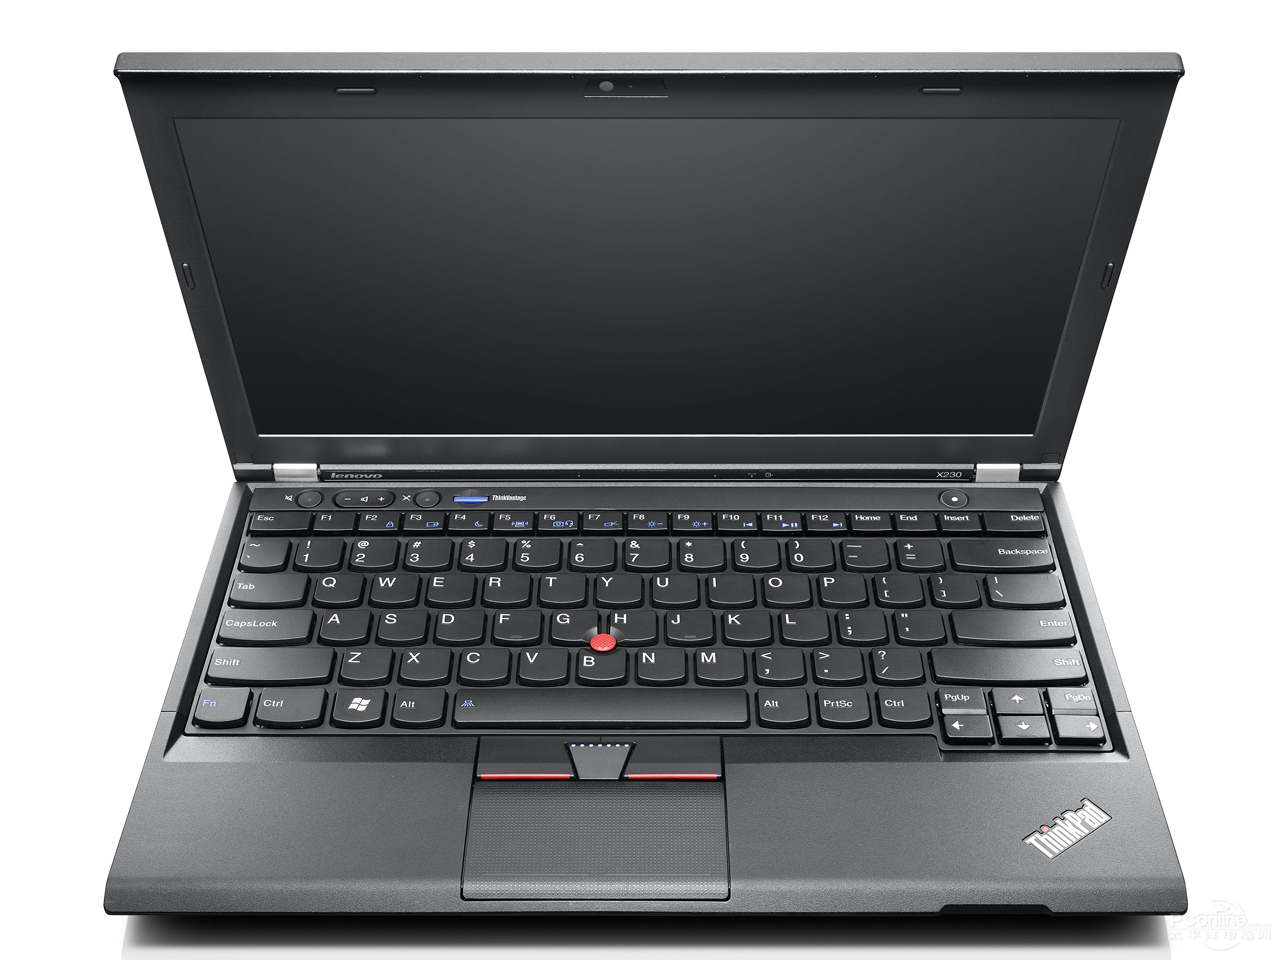 【图】联想ThinkPad X230-A93香港图片(X230